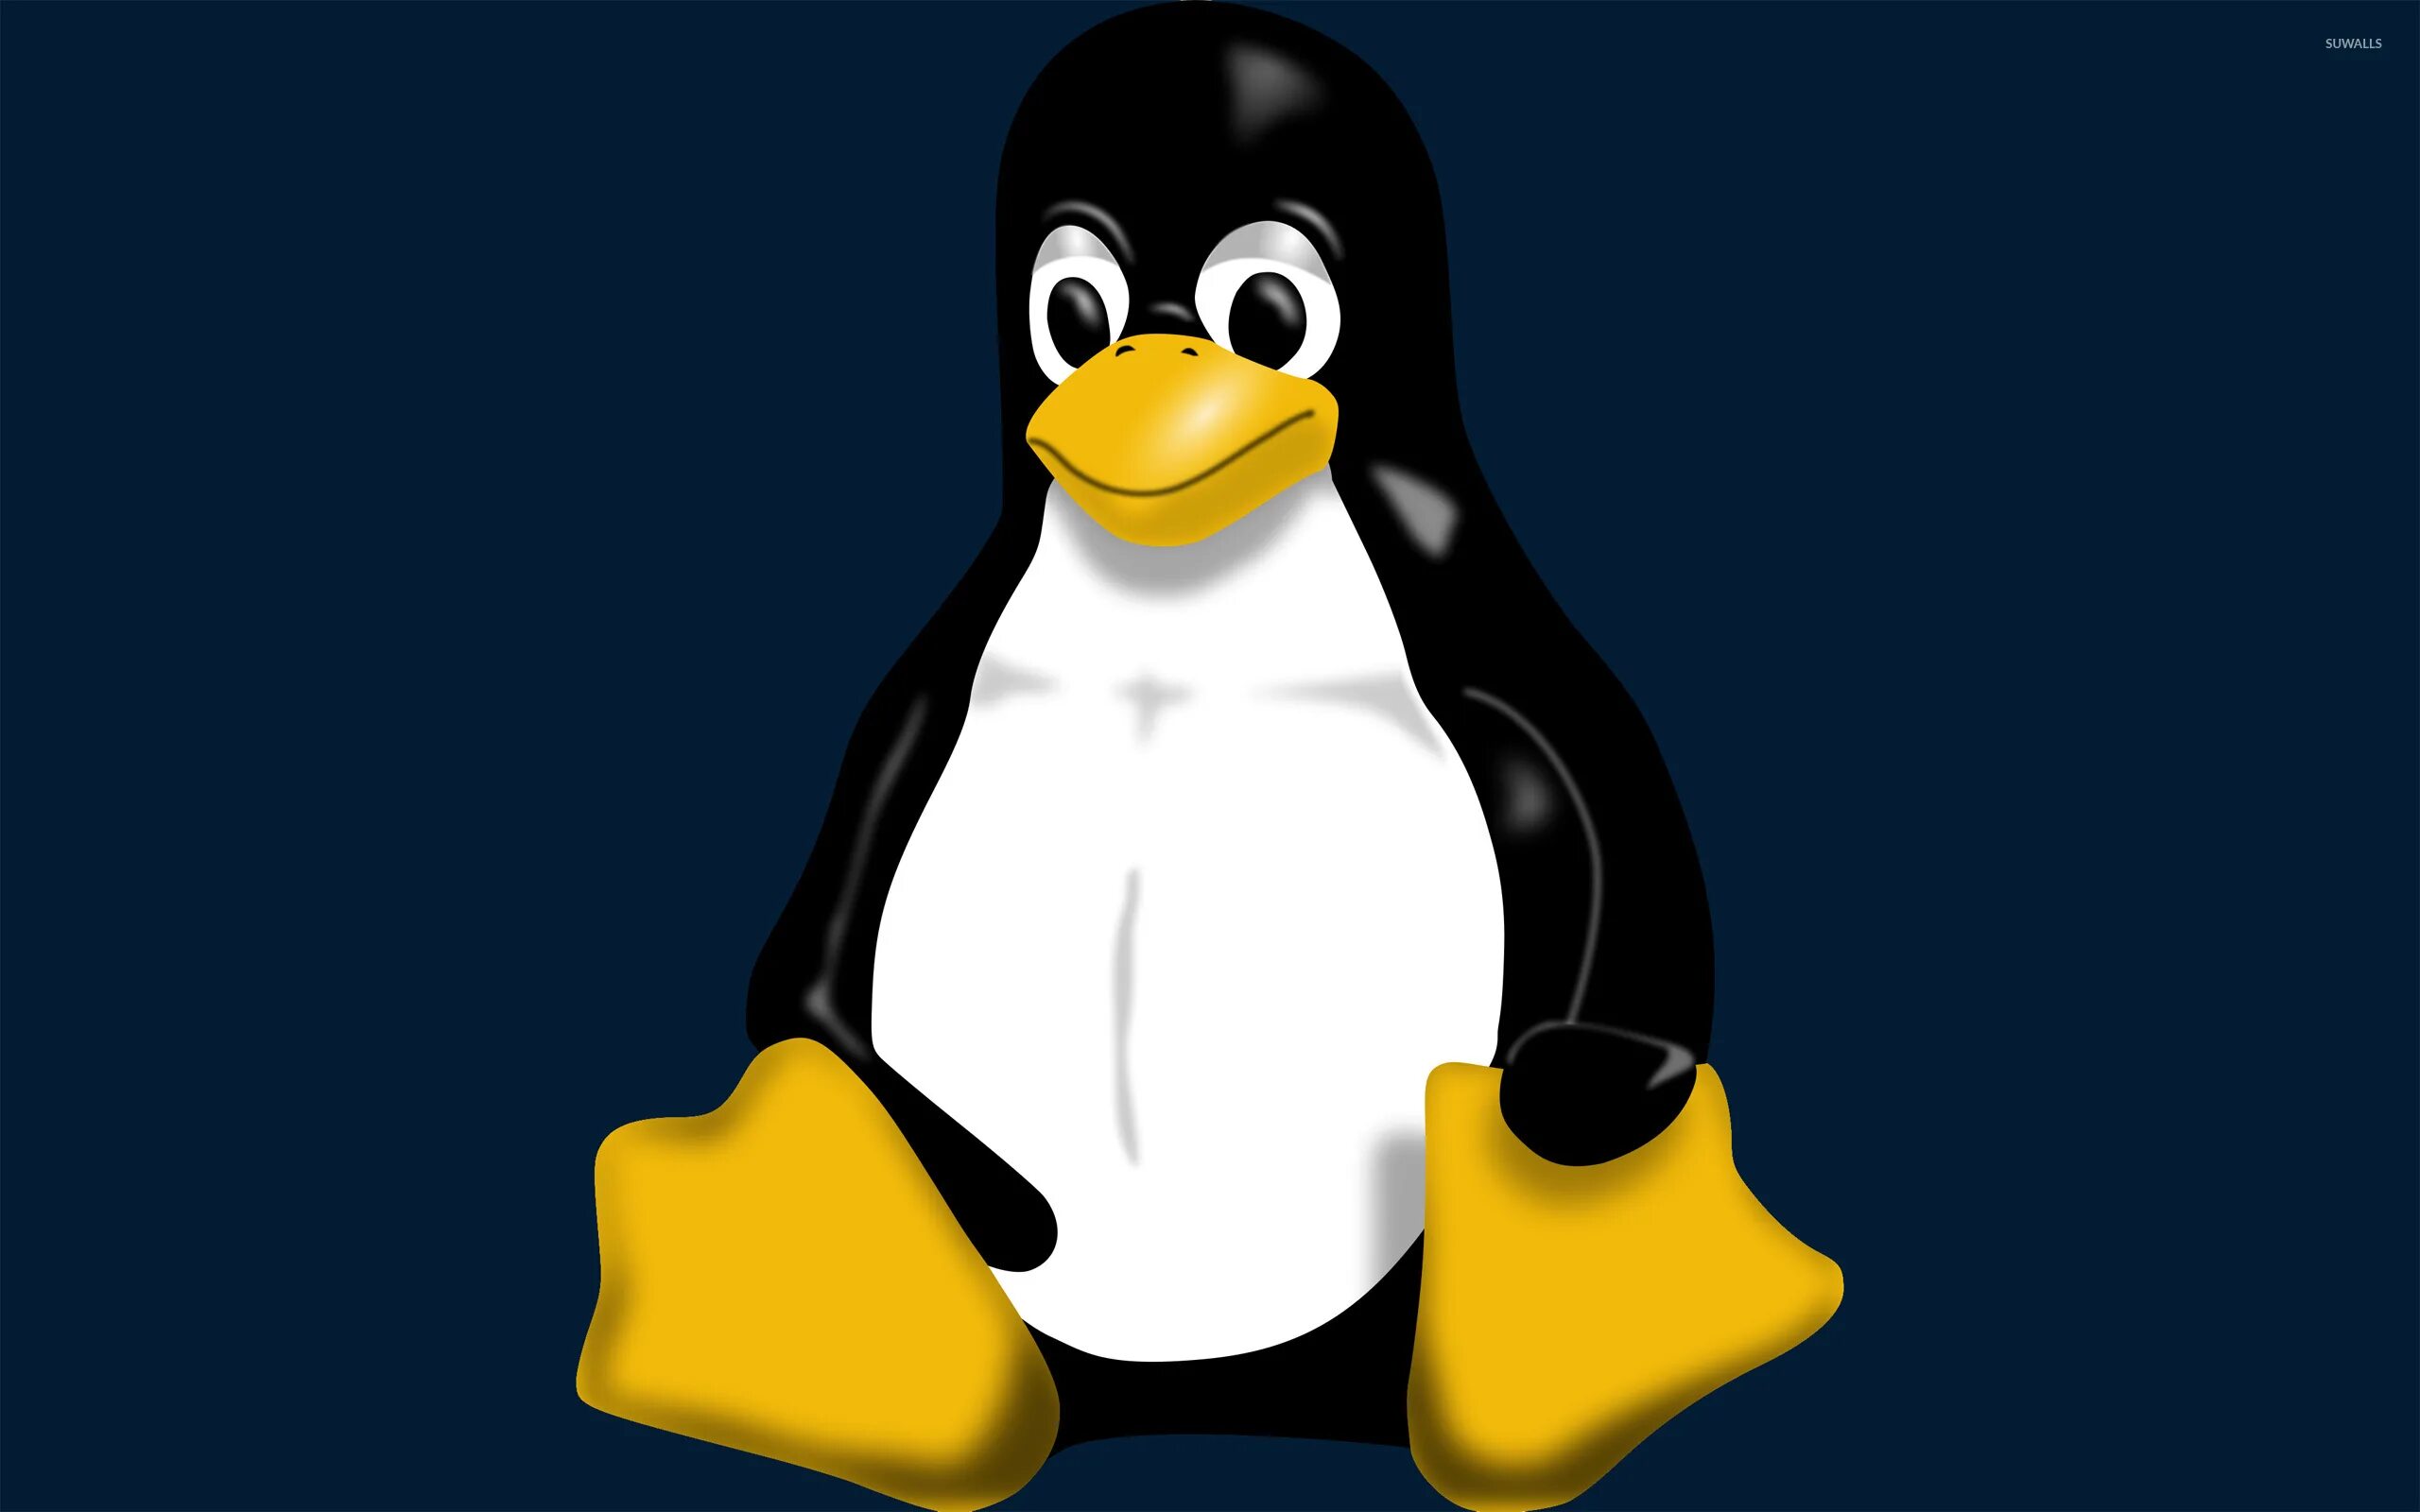 Изображения с расширением bmp. Рисунки с расширением bmp. Файлы с расширением bmp. Пингвин линукс.